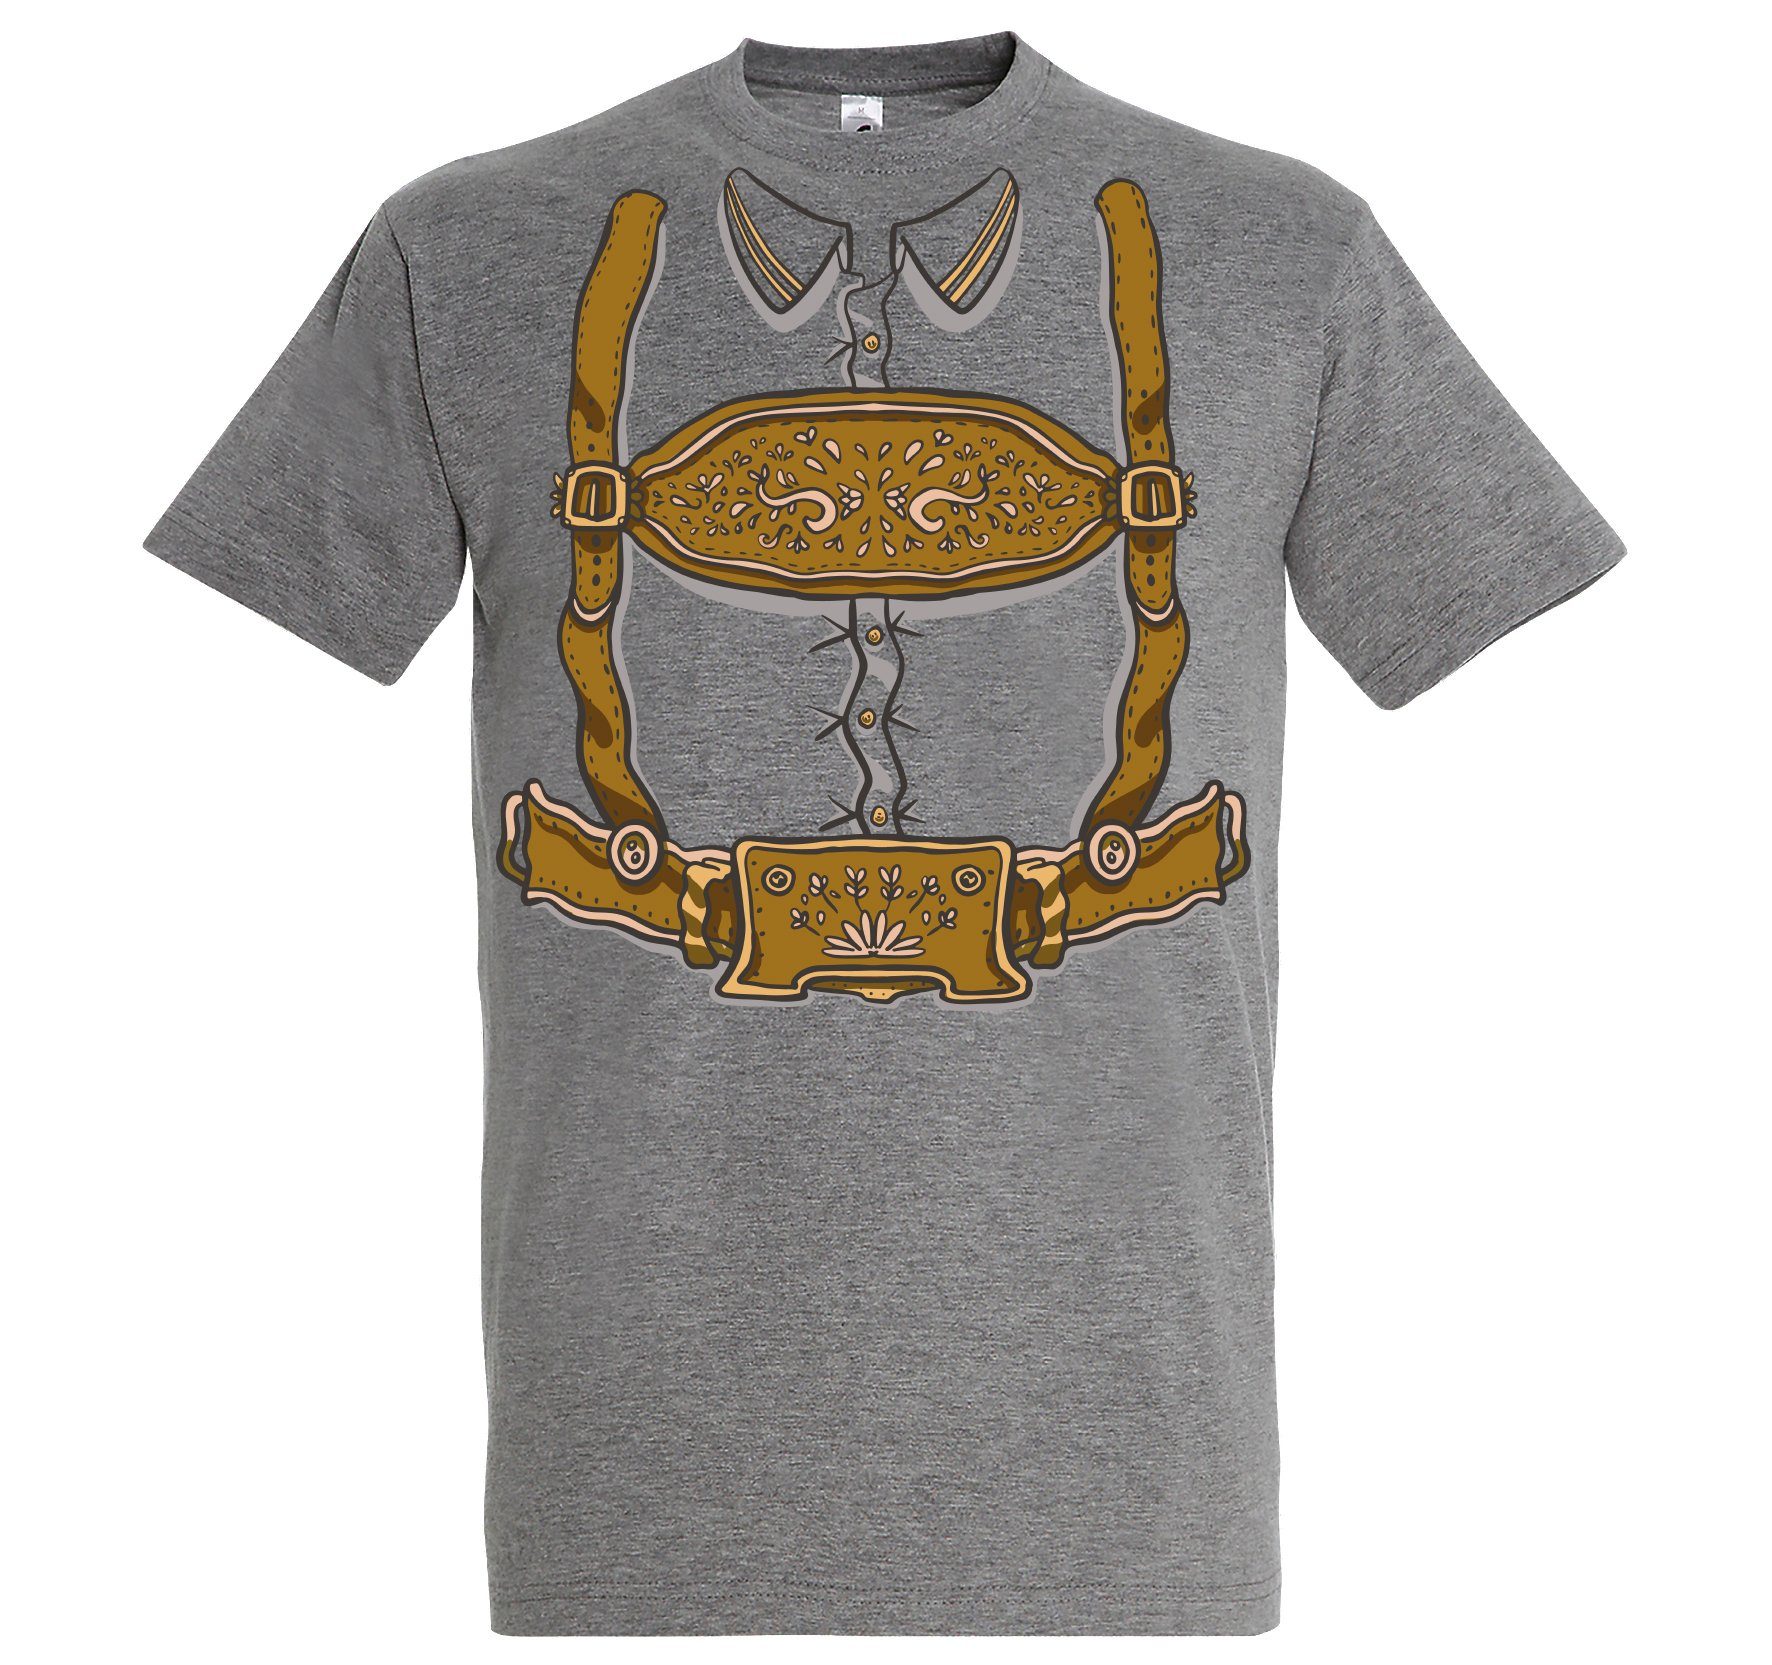 Youth Designz Print-Shirt Trachten Oktoberfest Fun-Look Herren T-Shirt mit lustigem Aufdruck Grau